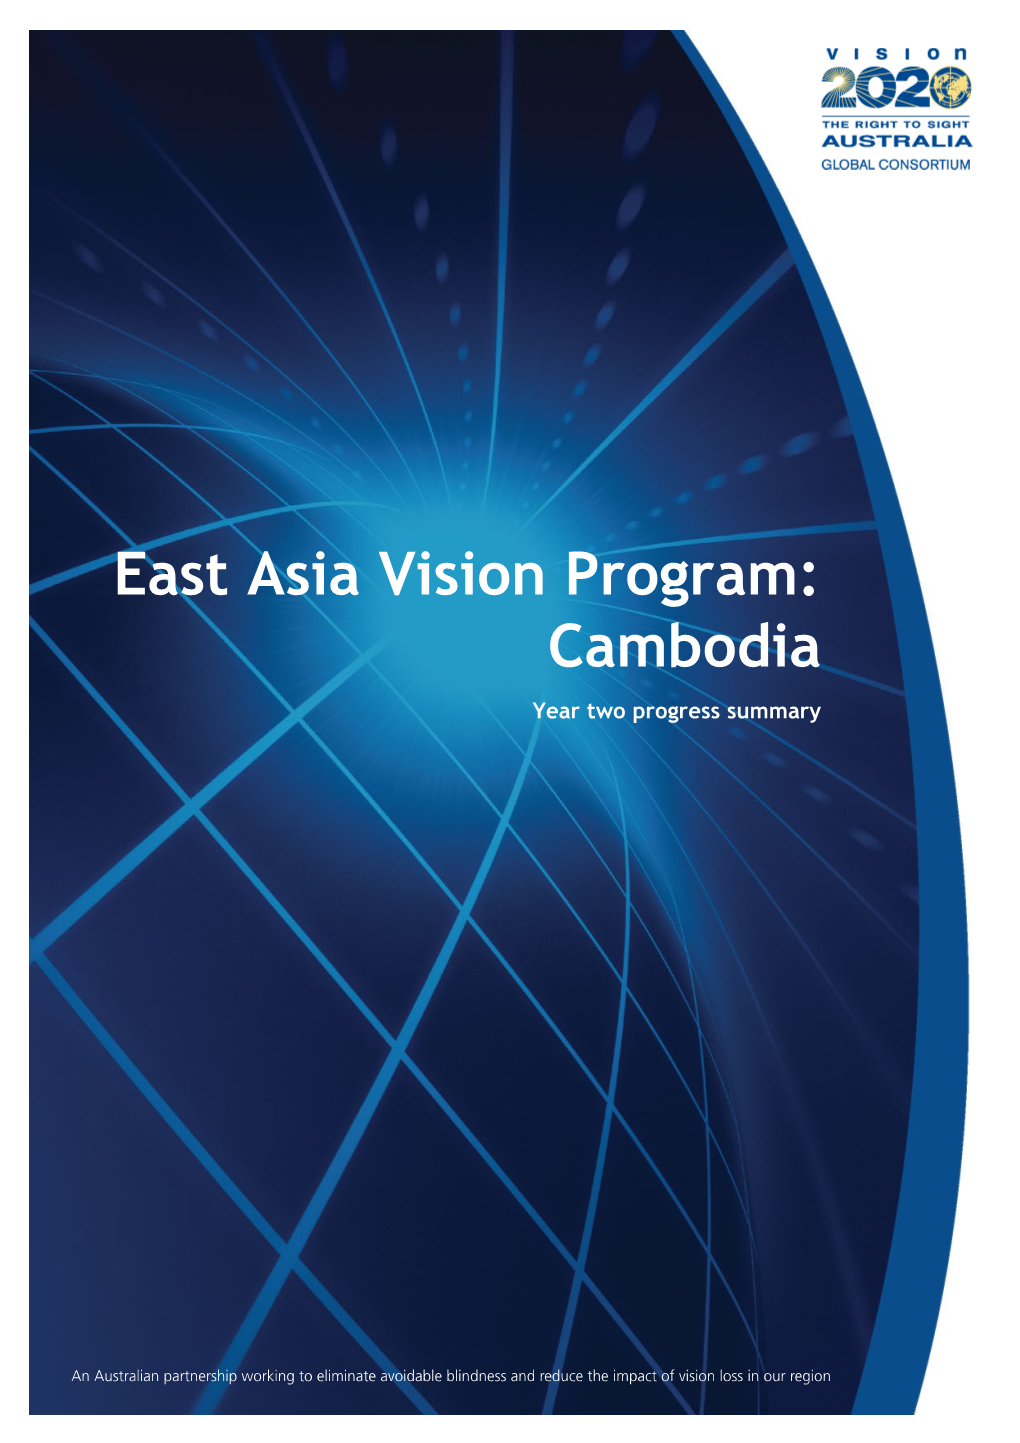 East Asia Vision Program: Cambodia